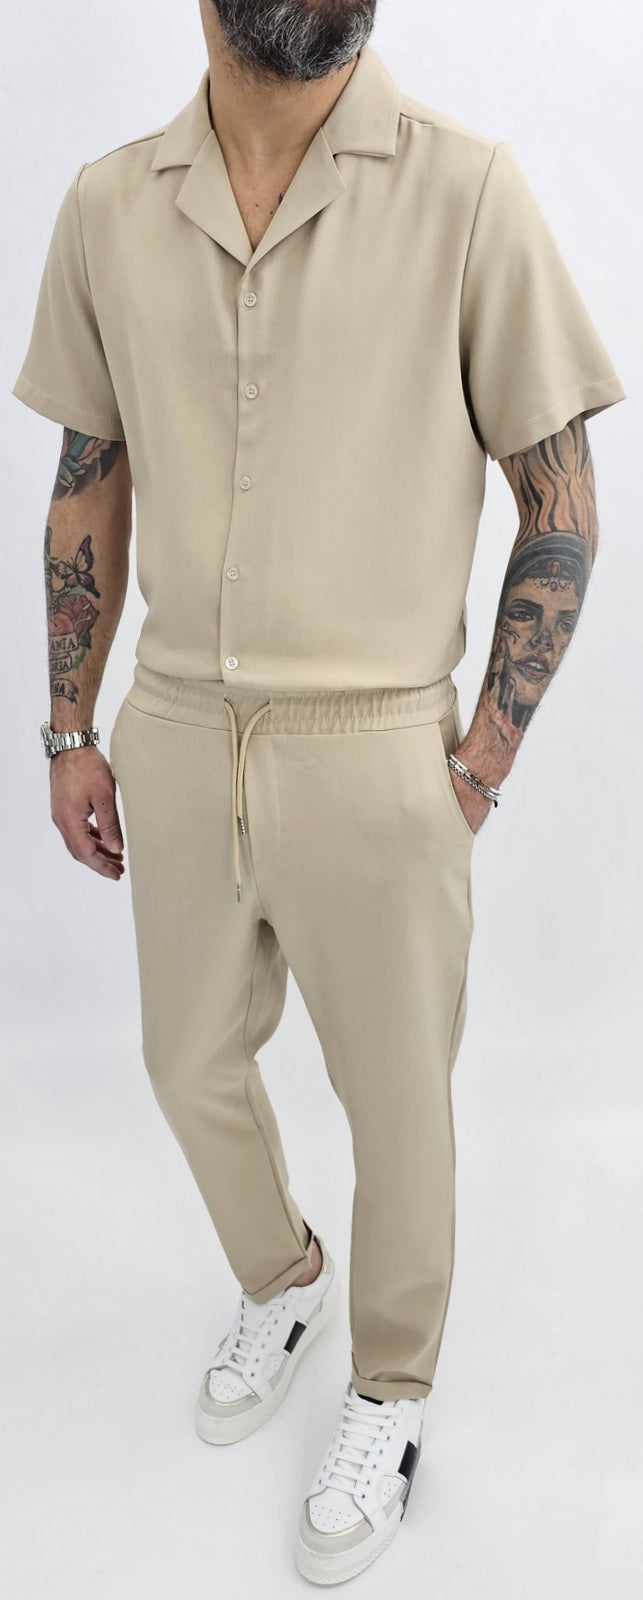 Completo uomo made in italy camicia+pantalone over size s,m,l,xl,xxl